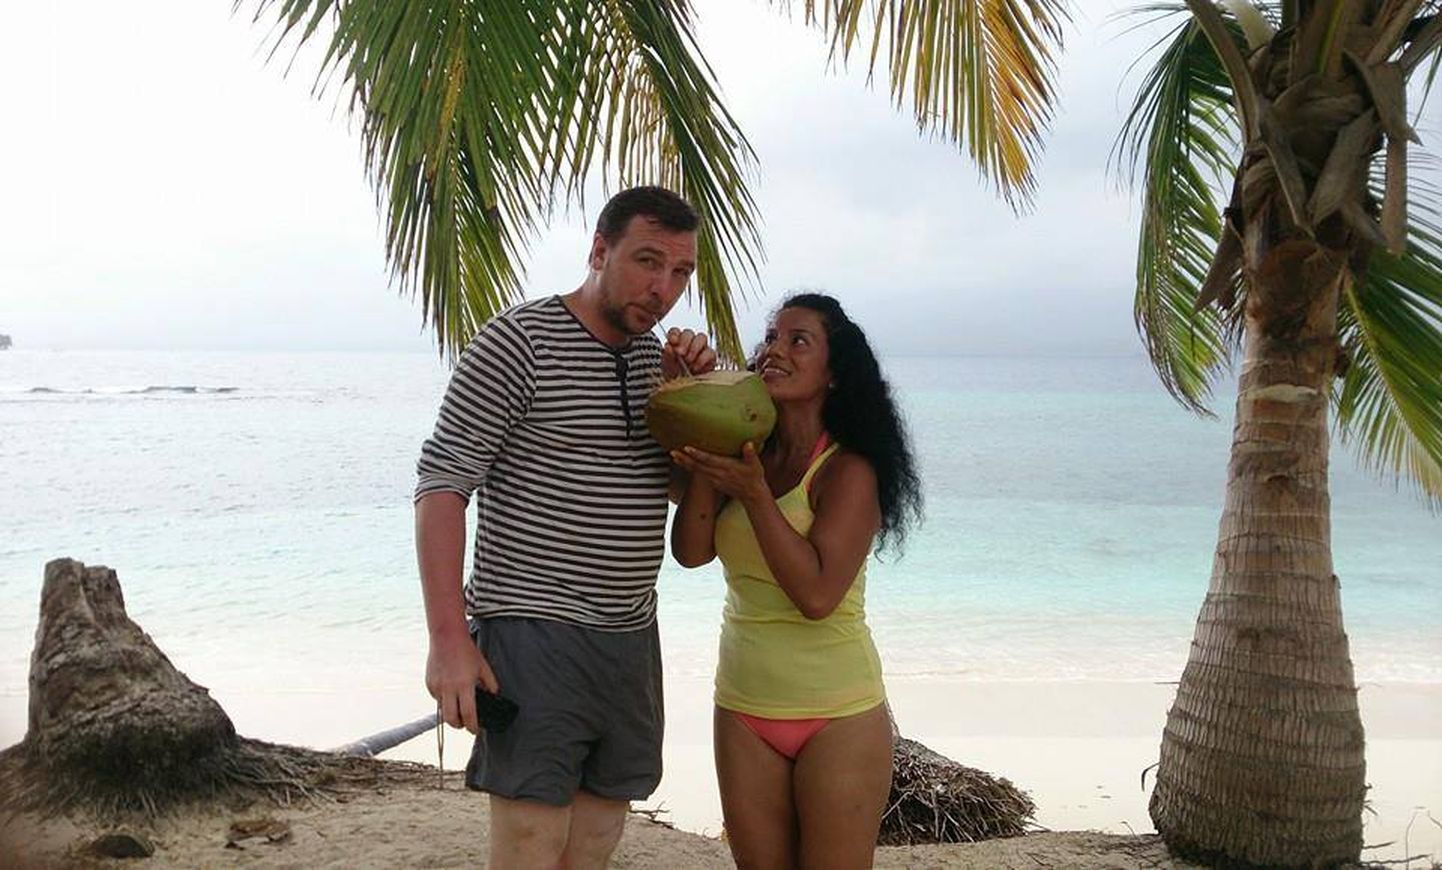 Indira koos näitlejast ja lavastajast abikaasa Allan Kressiga  oma kodumaa, Panama lähistel asuval saarel.